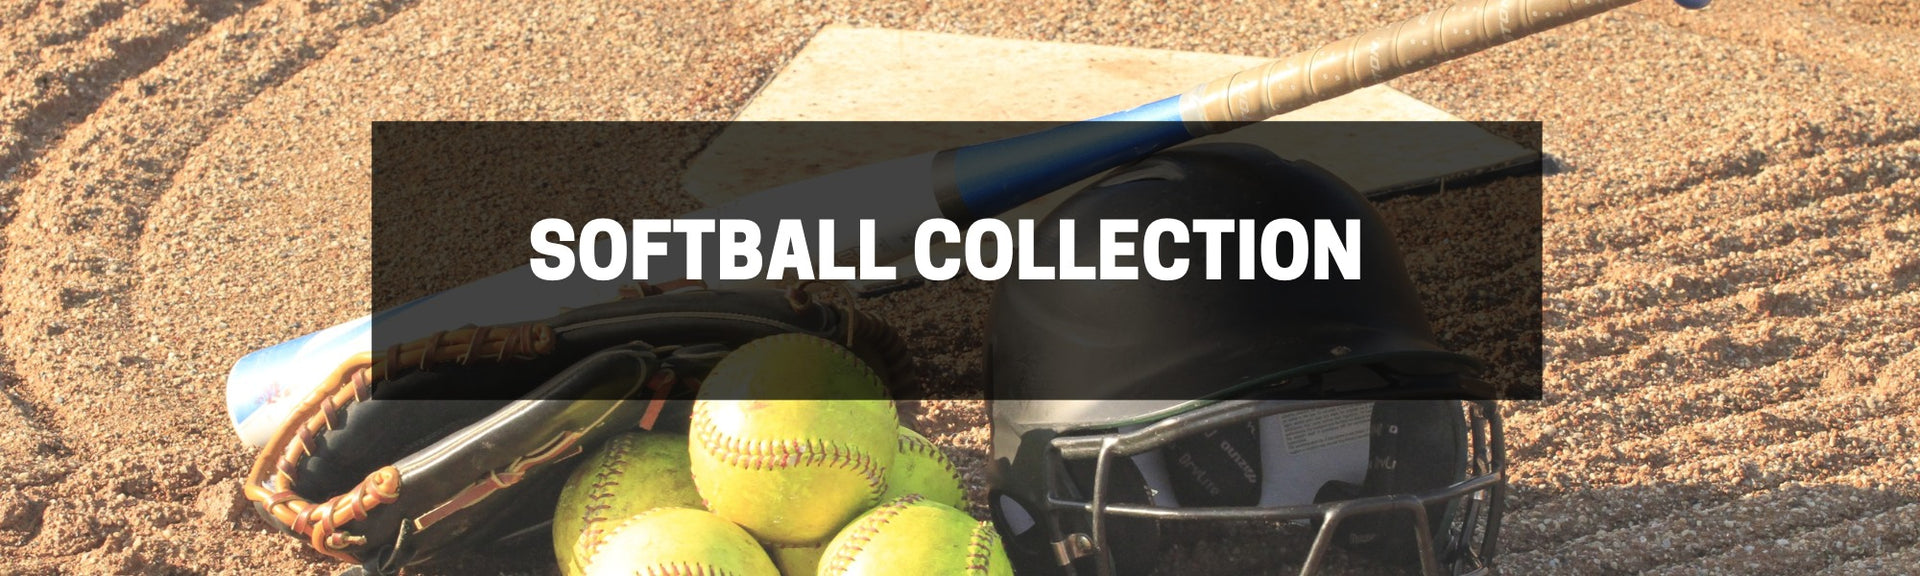 Softball Collection